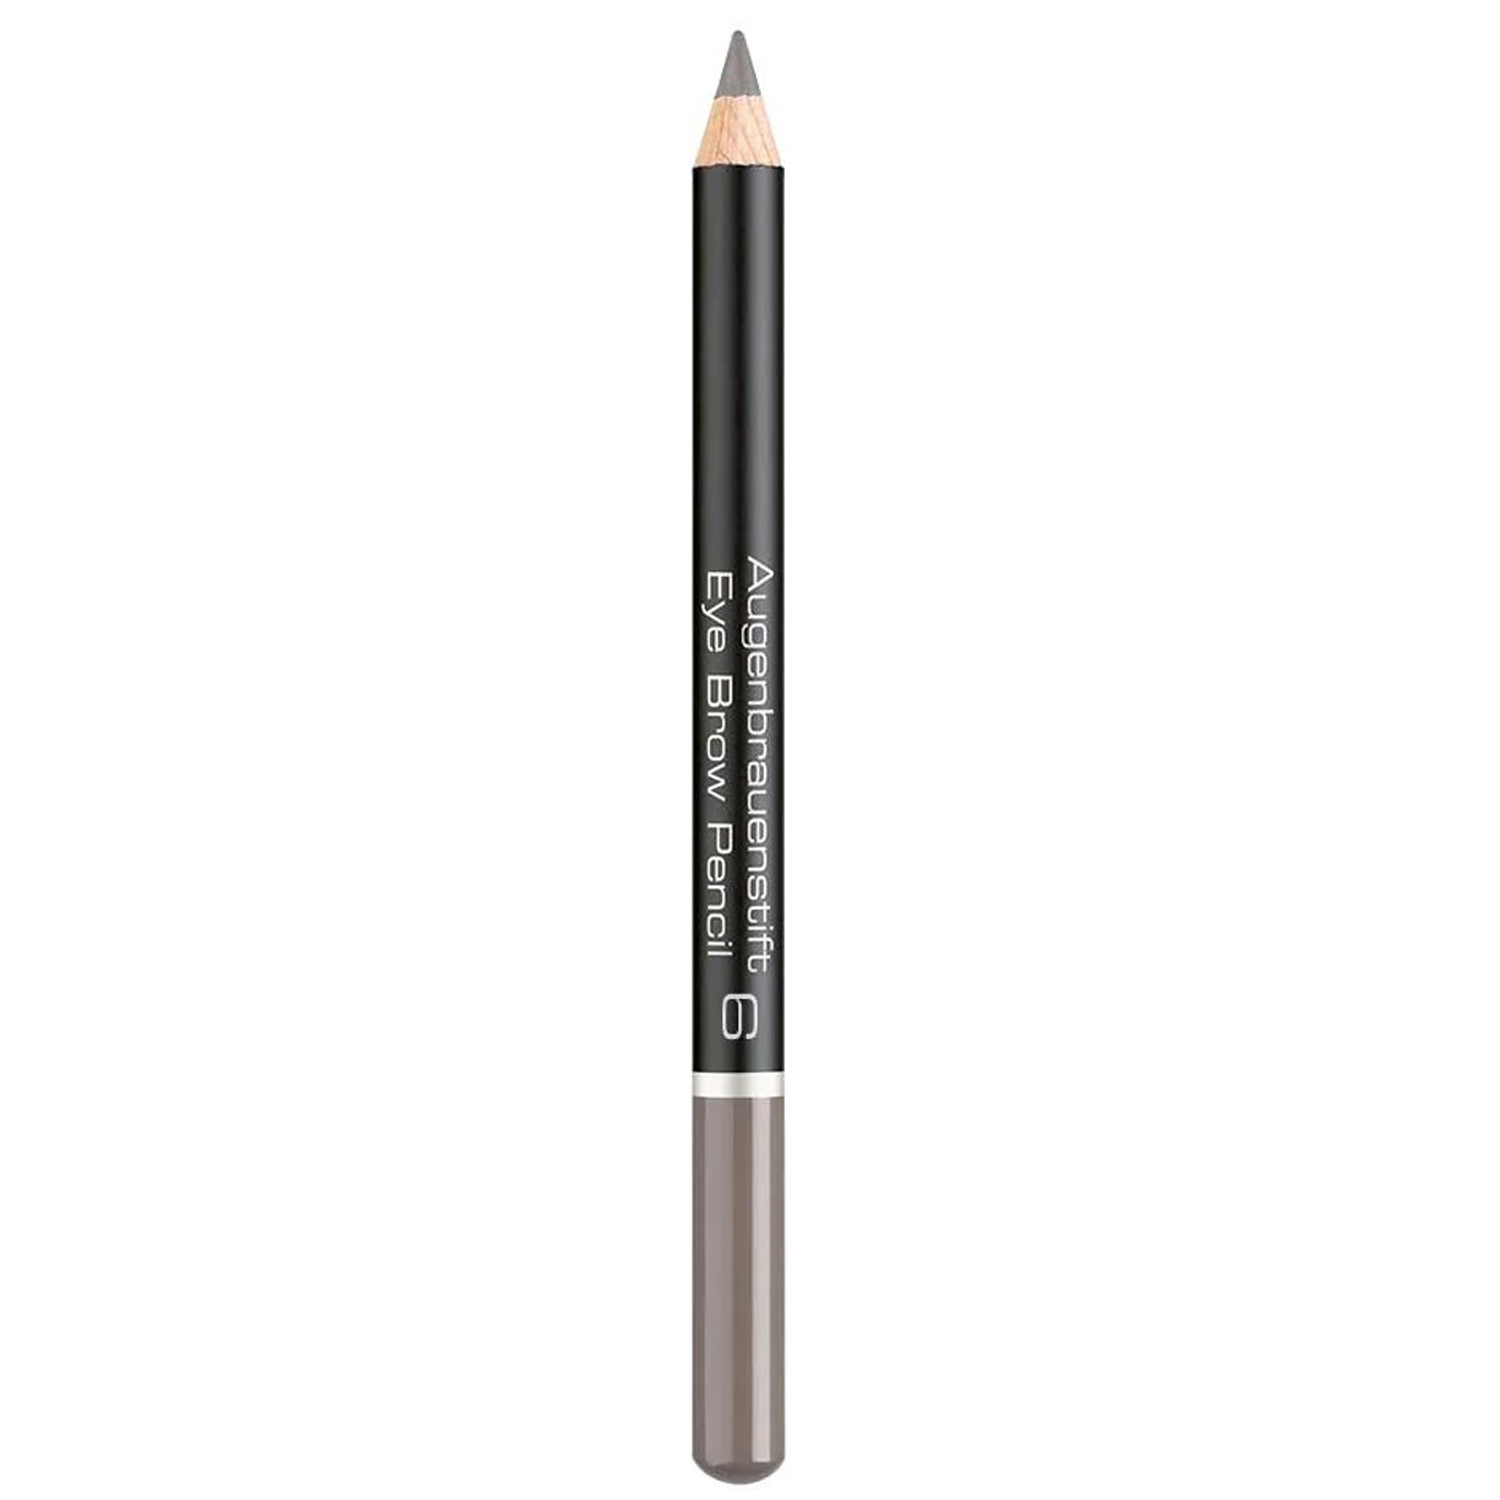 Олівець для брів Artdeco Eye Brow Pencil Medium Grey Brown тон 6, 1.1 г (73397) - фото 1